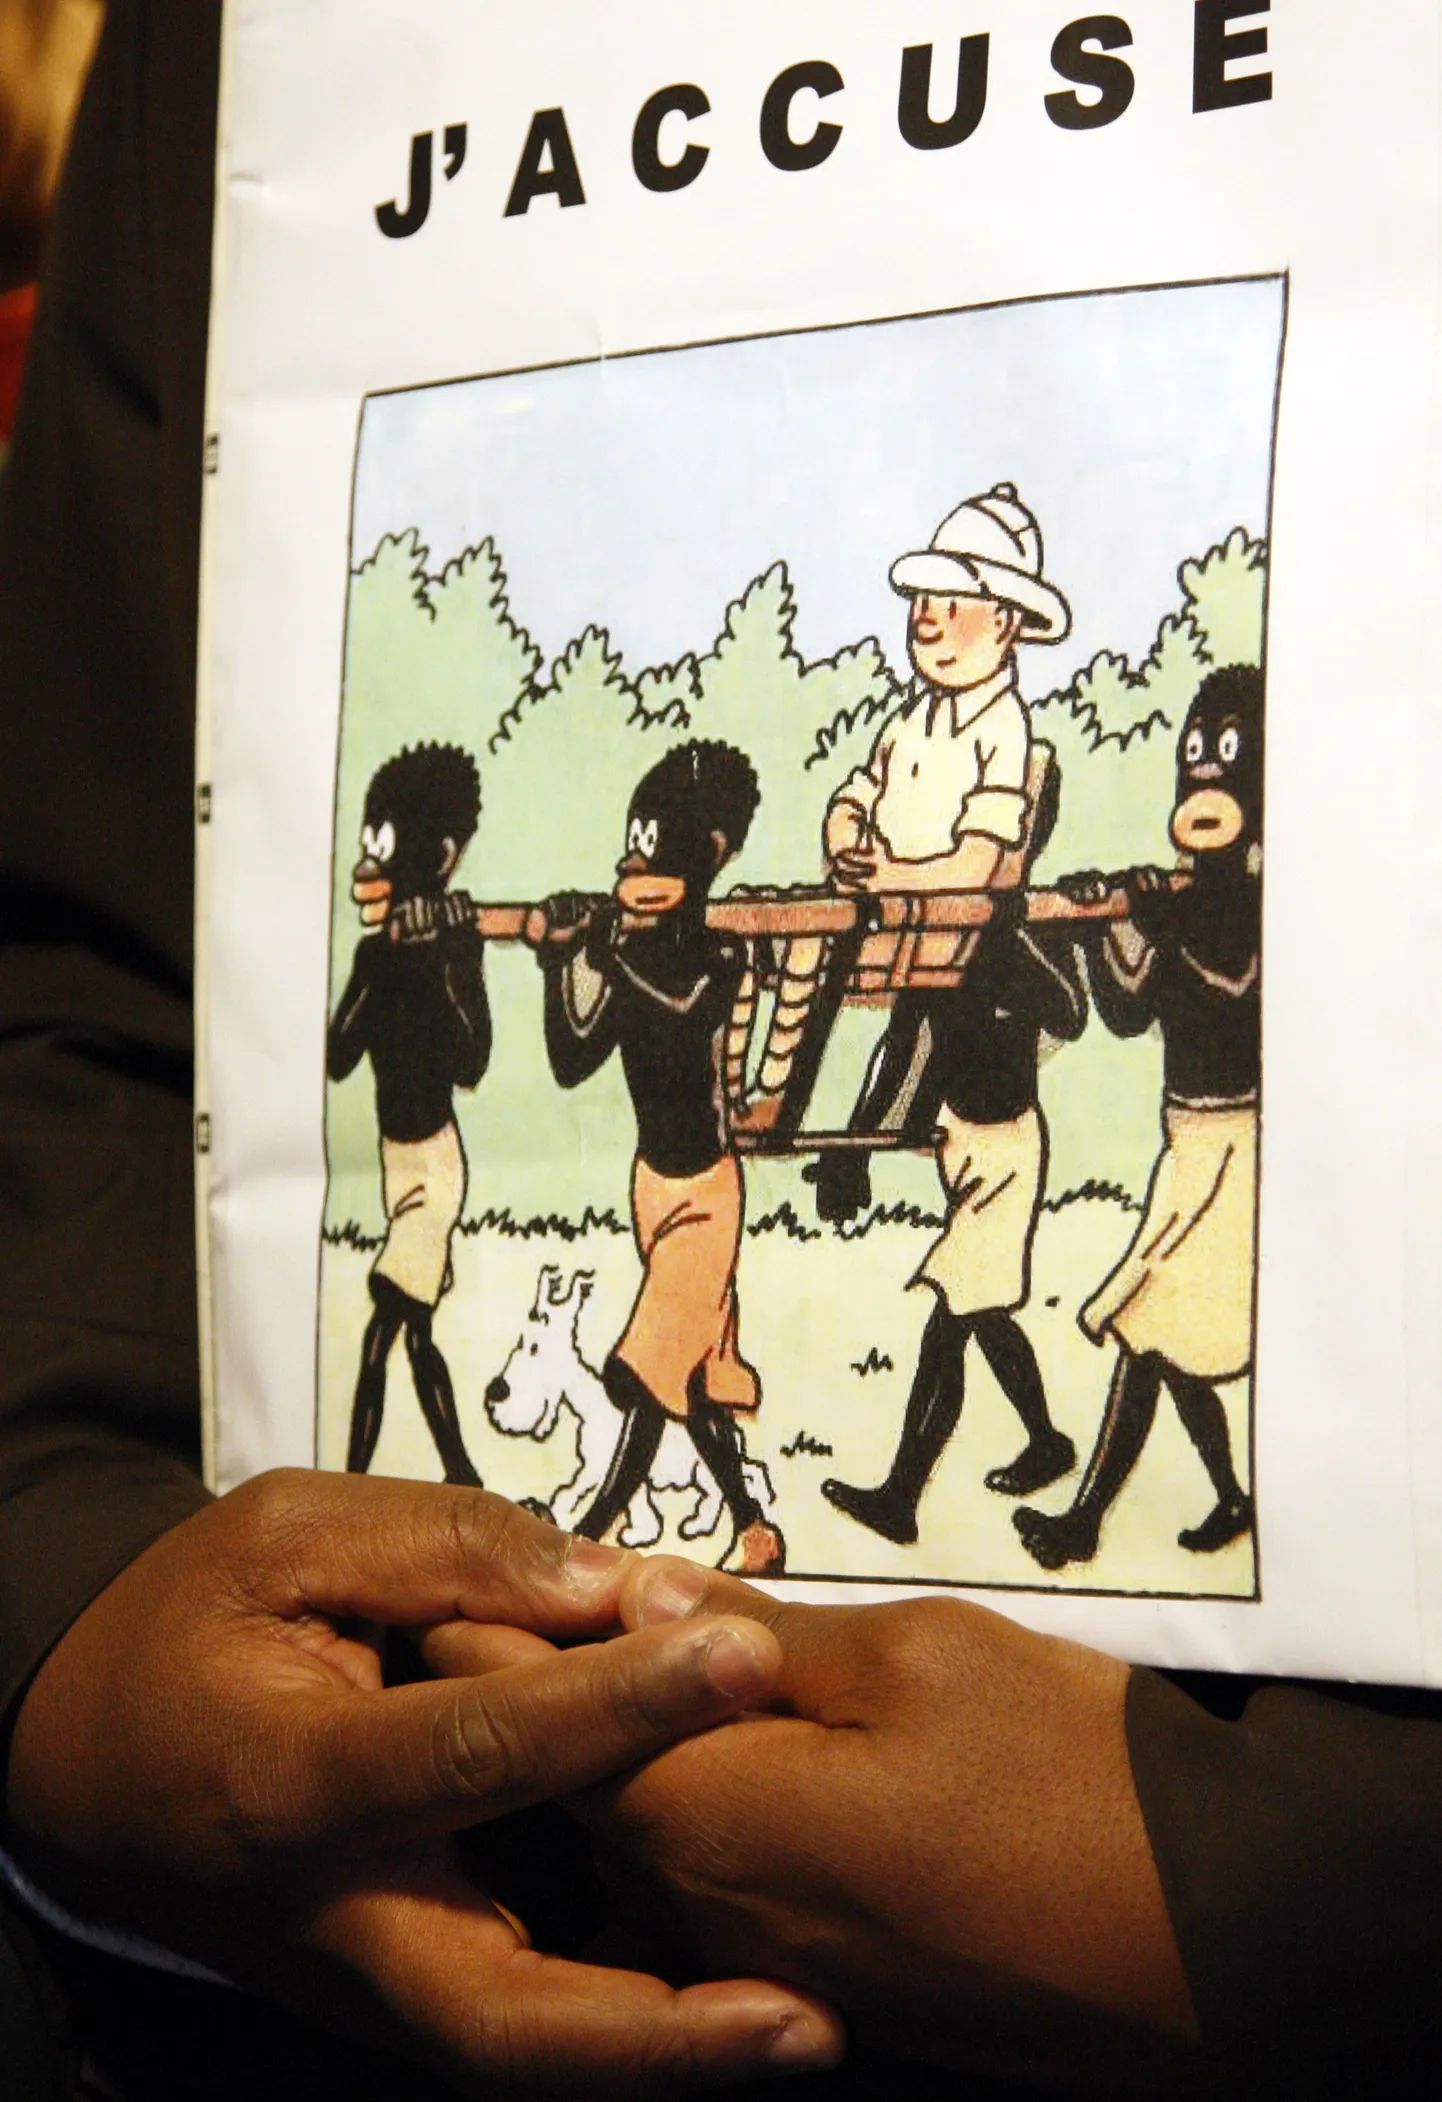 Tintini-raamatuid kohtu kaudu keelustada püüdnud Kongo päritolu Bienvenu Mbutu Mondondo hoidmas käes vastuolulist koomiksit. Kuigi kohus hagi ei rahuldanud, pole näiteks Tintini Kongo-raamatut Ameerika Ühendriikides kunagi avaldatud.